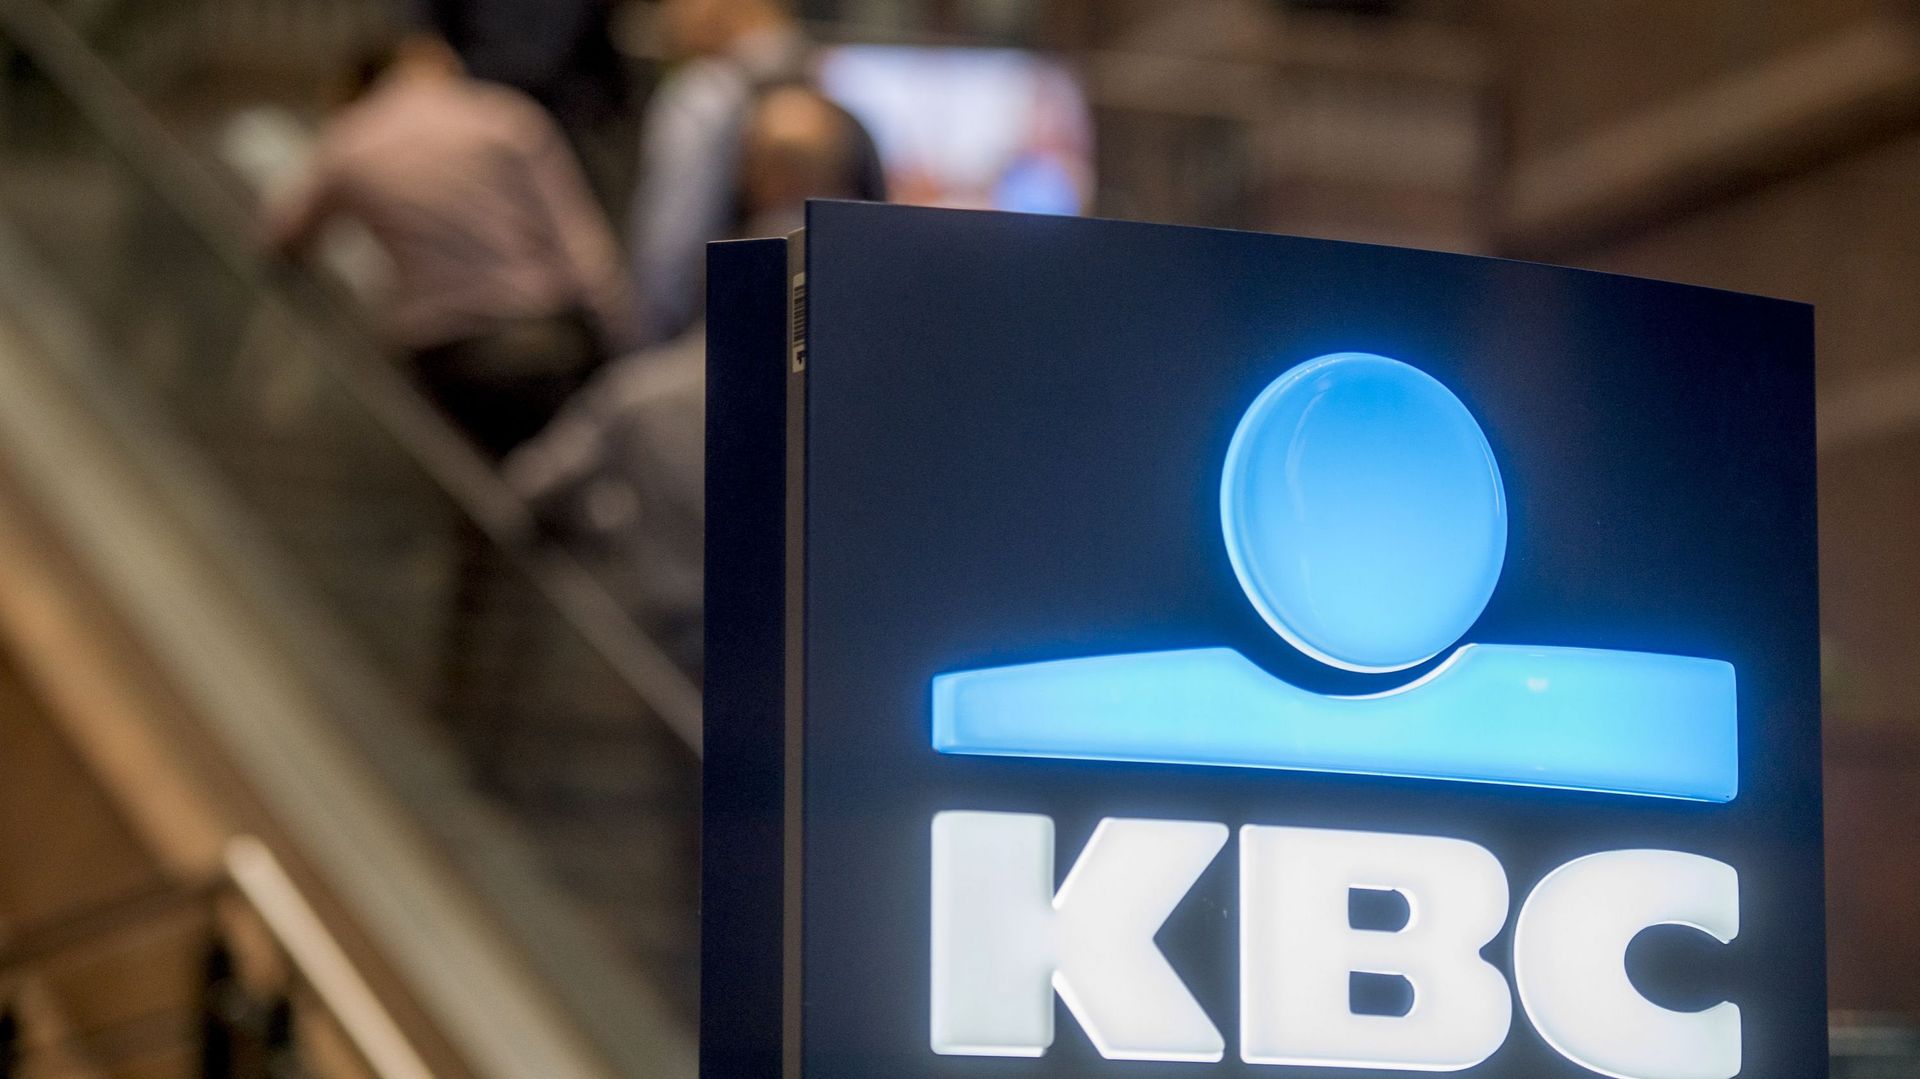 Banques et énergies polluantes: KBC dit mener une politique de désinvestissement